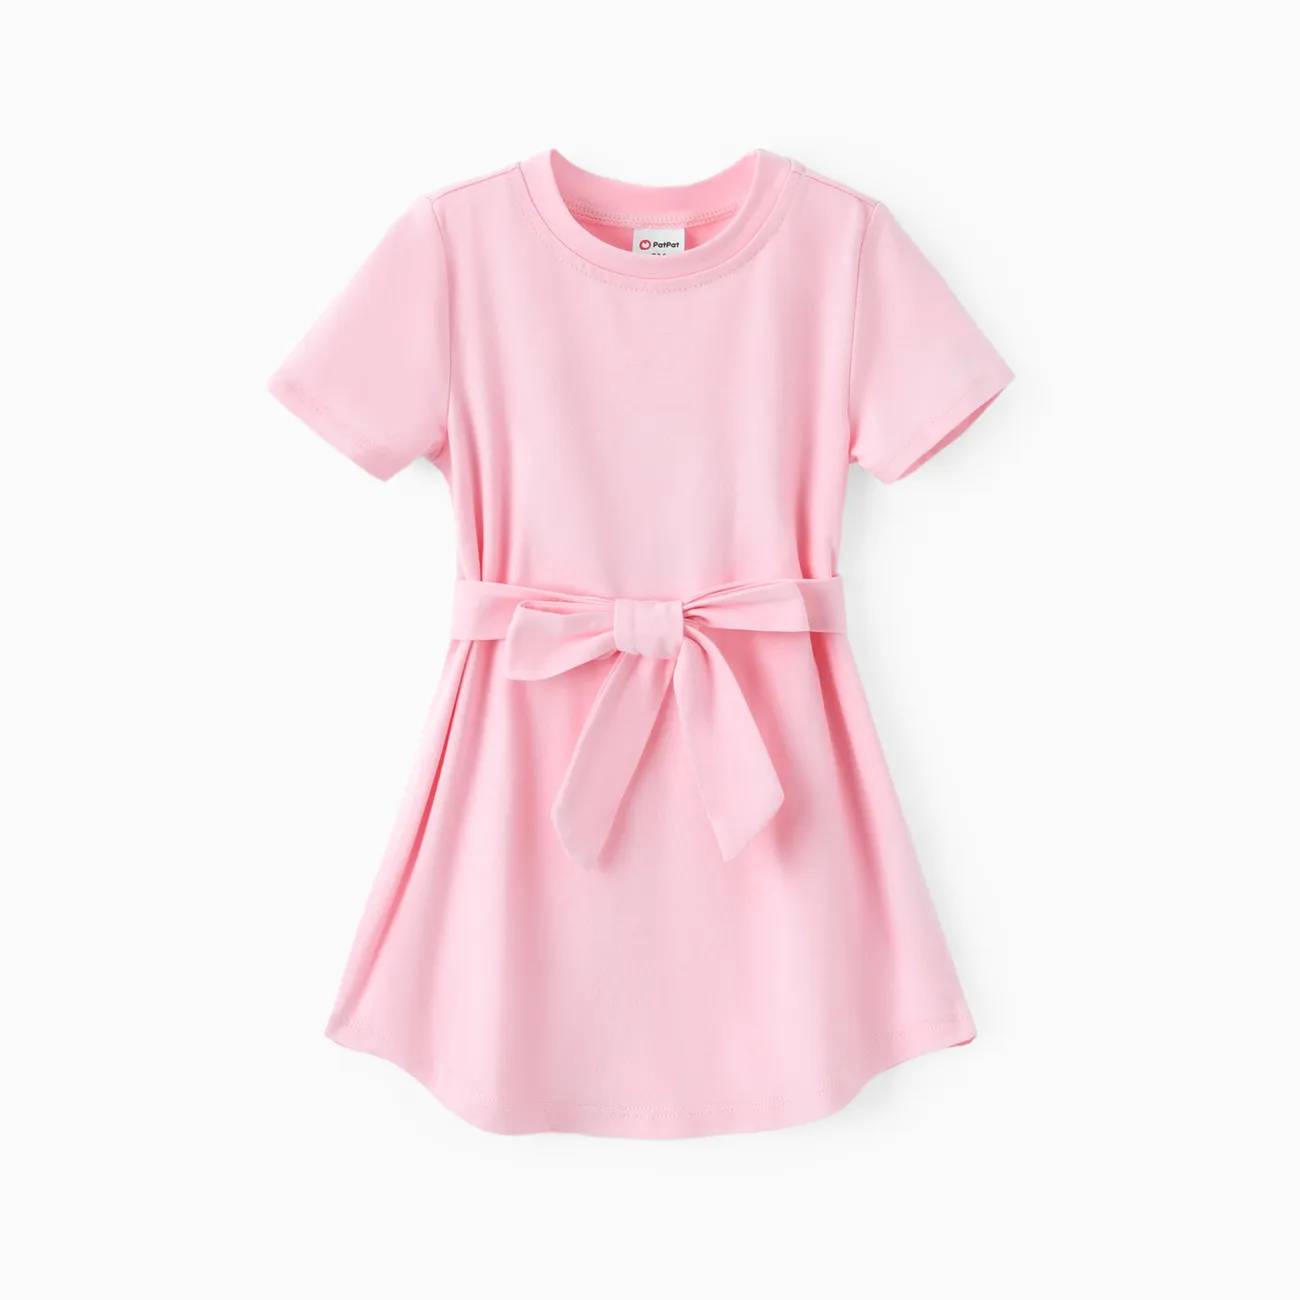 Toddler Girl Solid Curved Hem Short-sleeve Belted Dress Light Pink big image 1